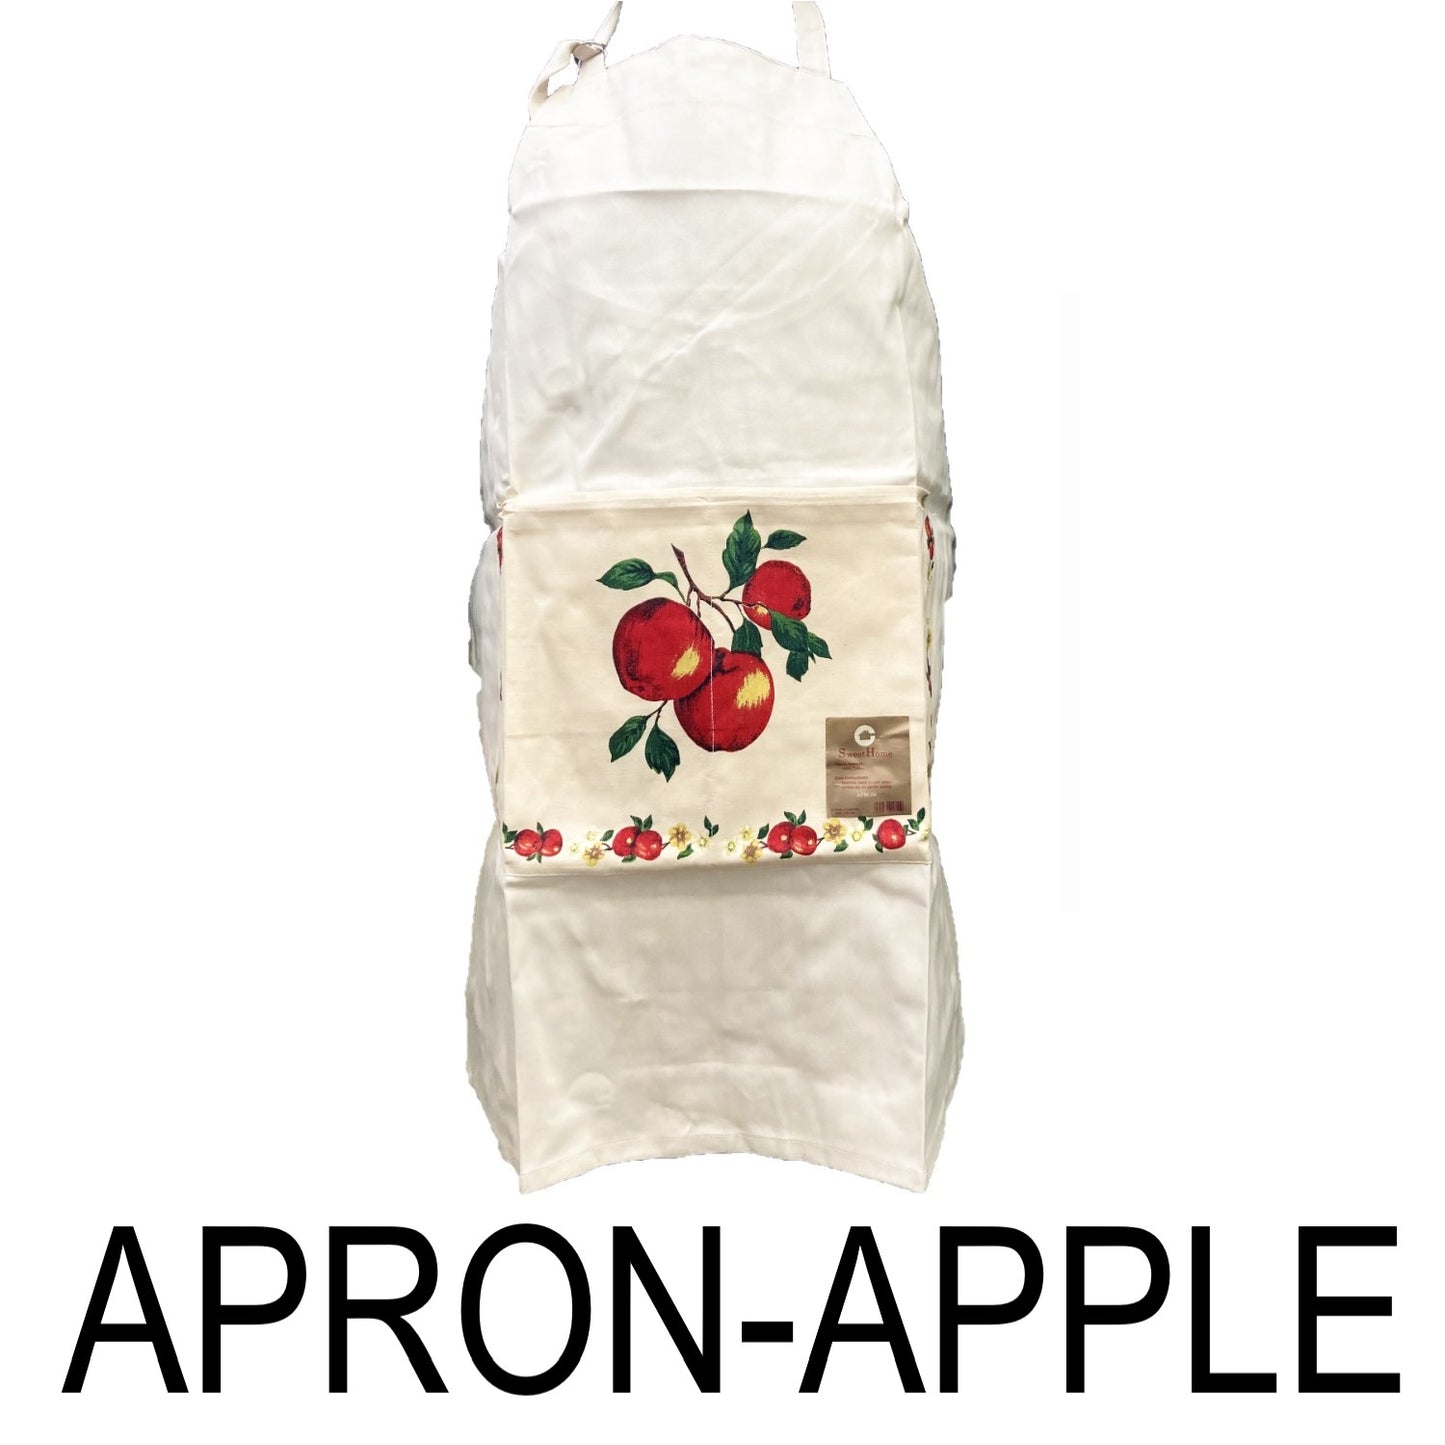 Apple Apron / Mandil 100% Cotton